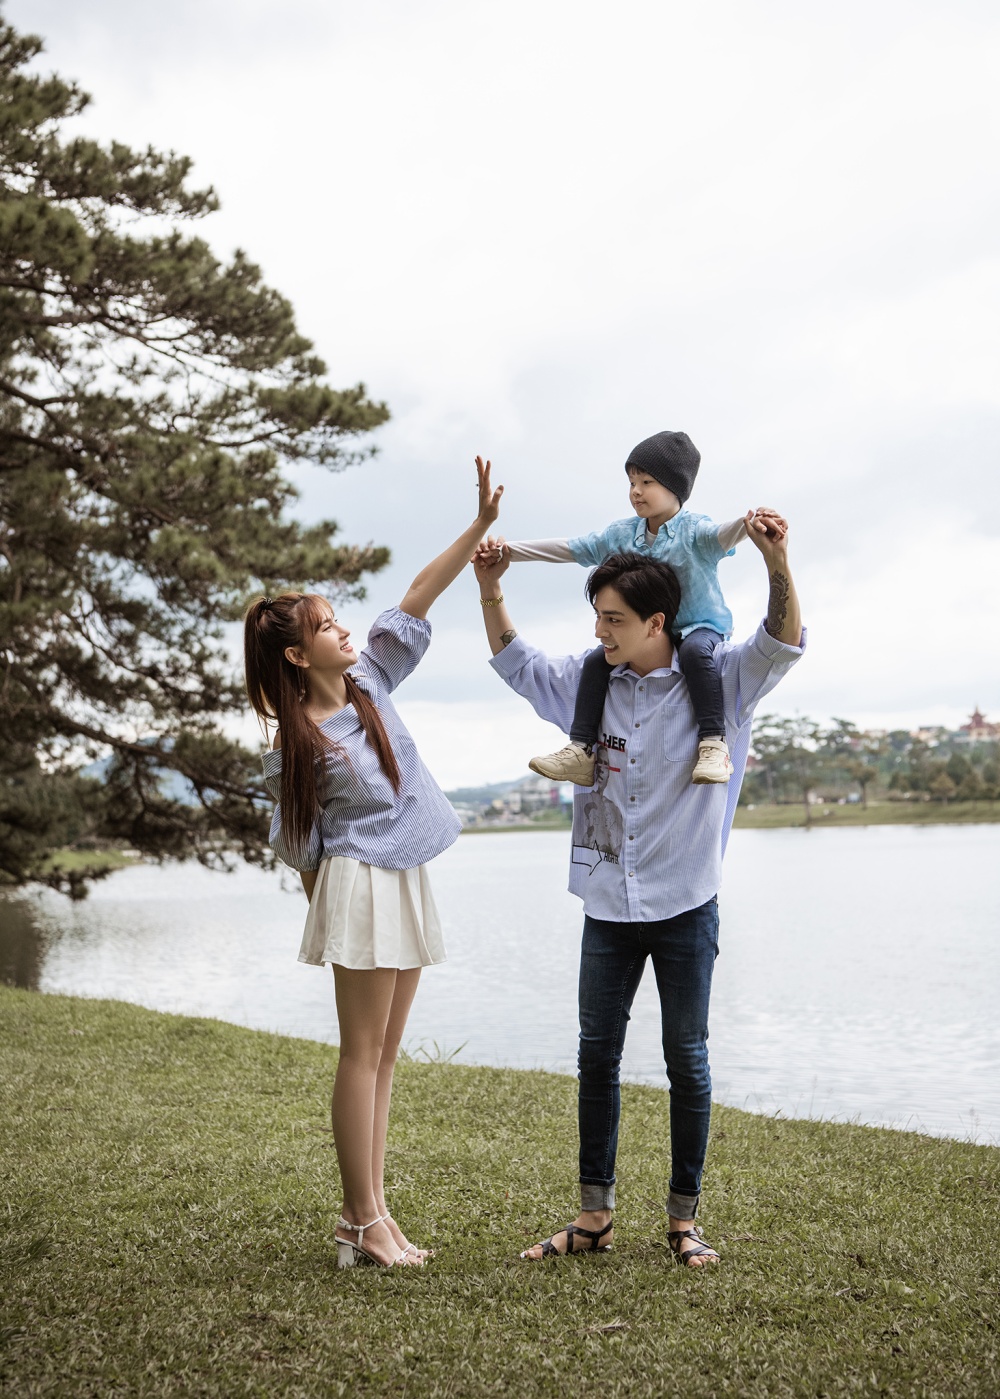 Thu Thủy: 'Cùng nhau chăm sóc con trai là niềm hạnh phúc lớn nhất của 2 vợ chồng'